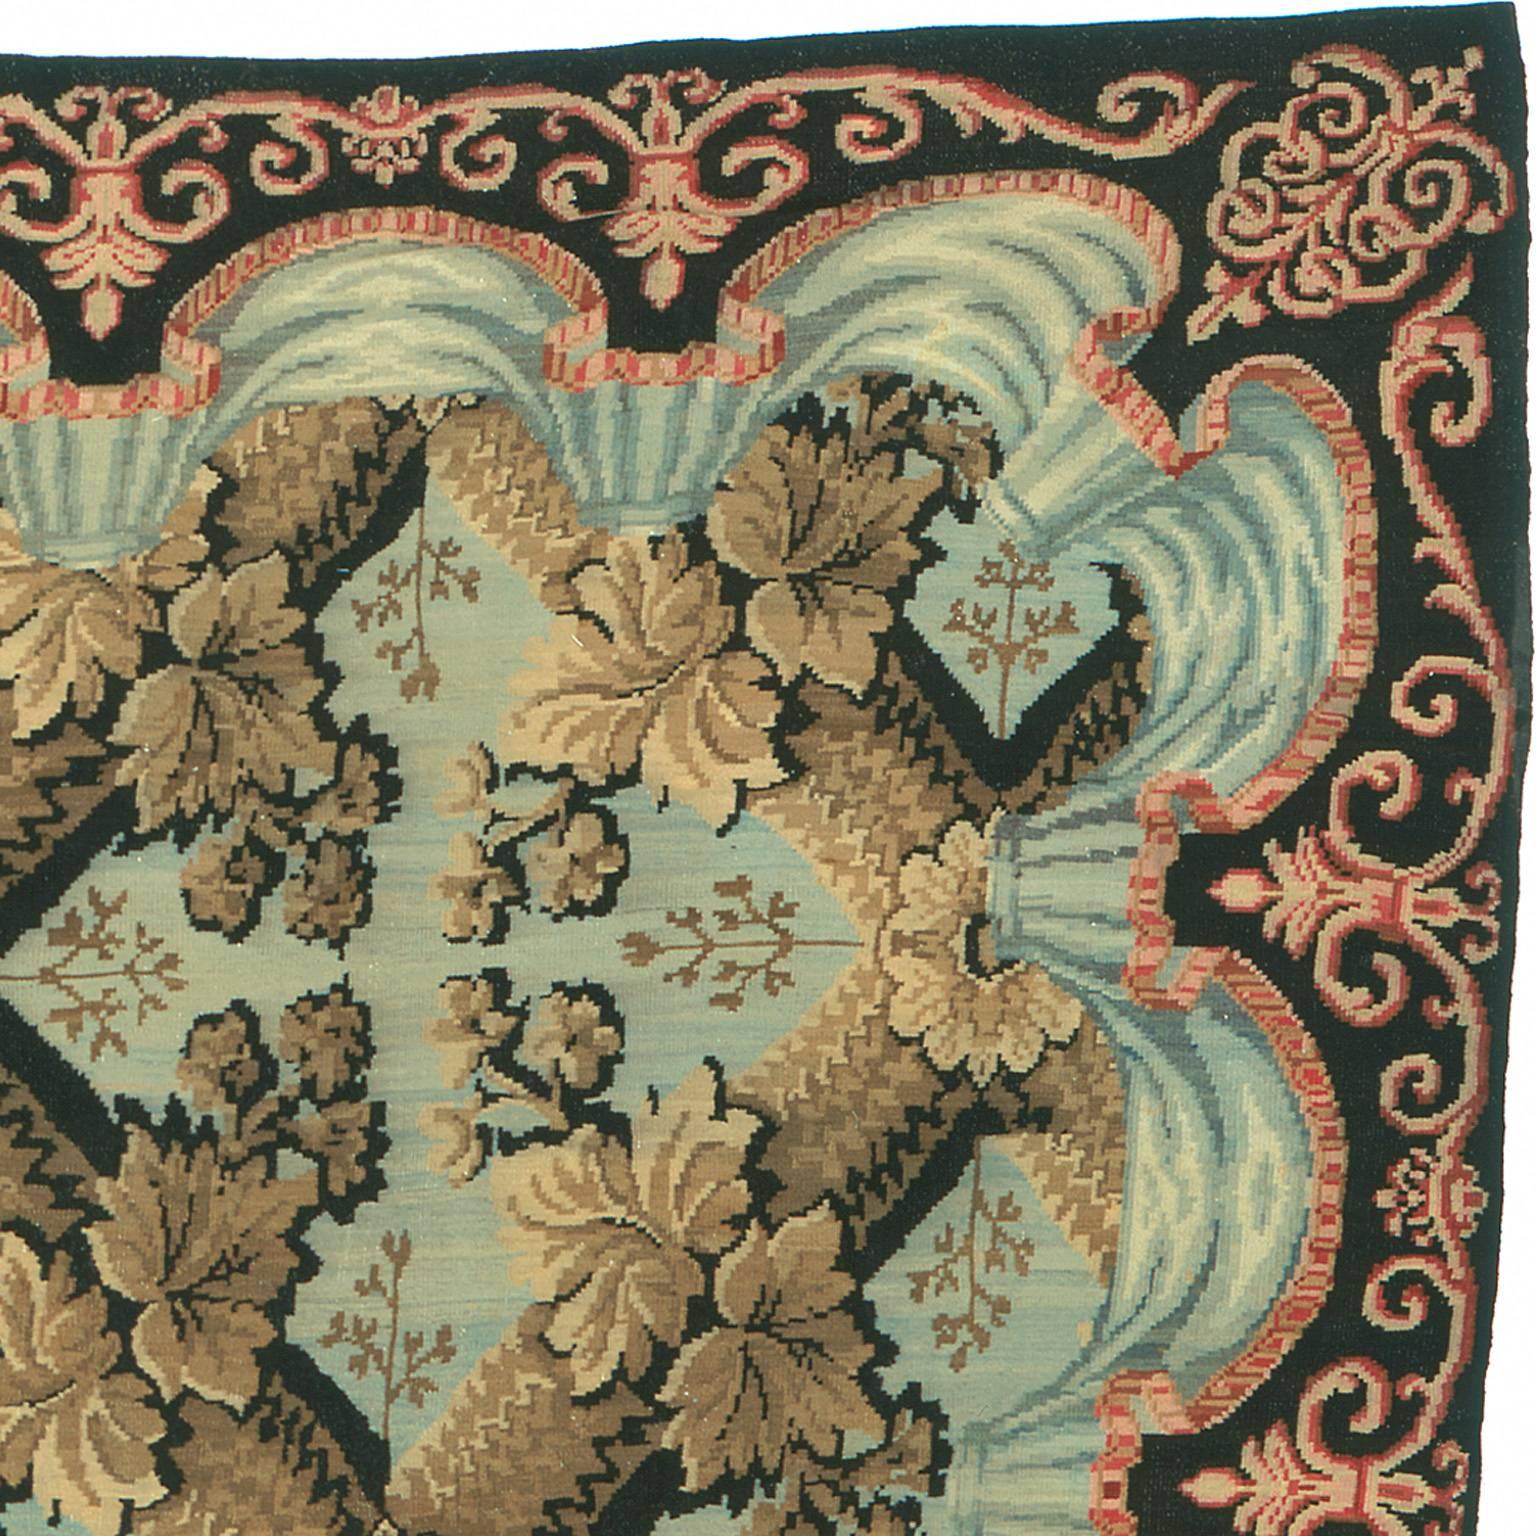 Mid-19th century Bessarabian carpet.
Place of origin: Russia.